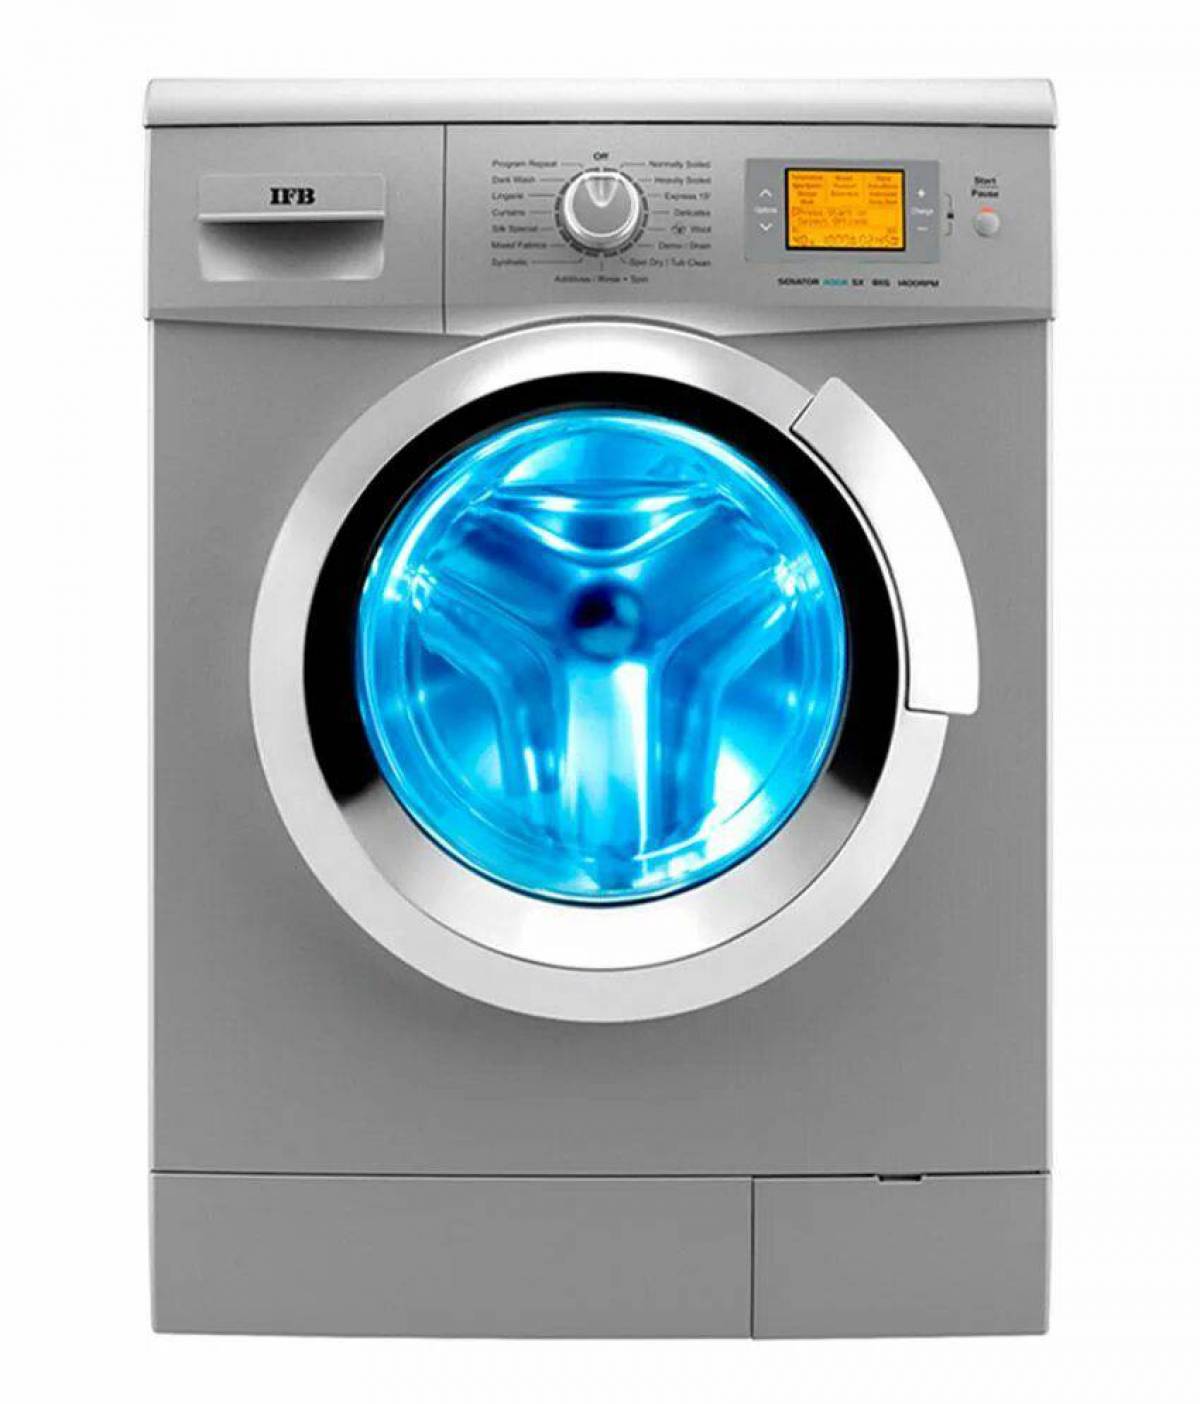 Стиральная машинка h. Стиральная машина Automatic washing Machine. Самсунг Wash Master стиральная машина. Стиральная машина Haier hw50-1010. Samsung стиральная машина 2022.